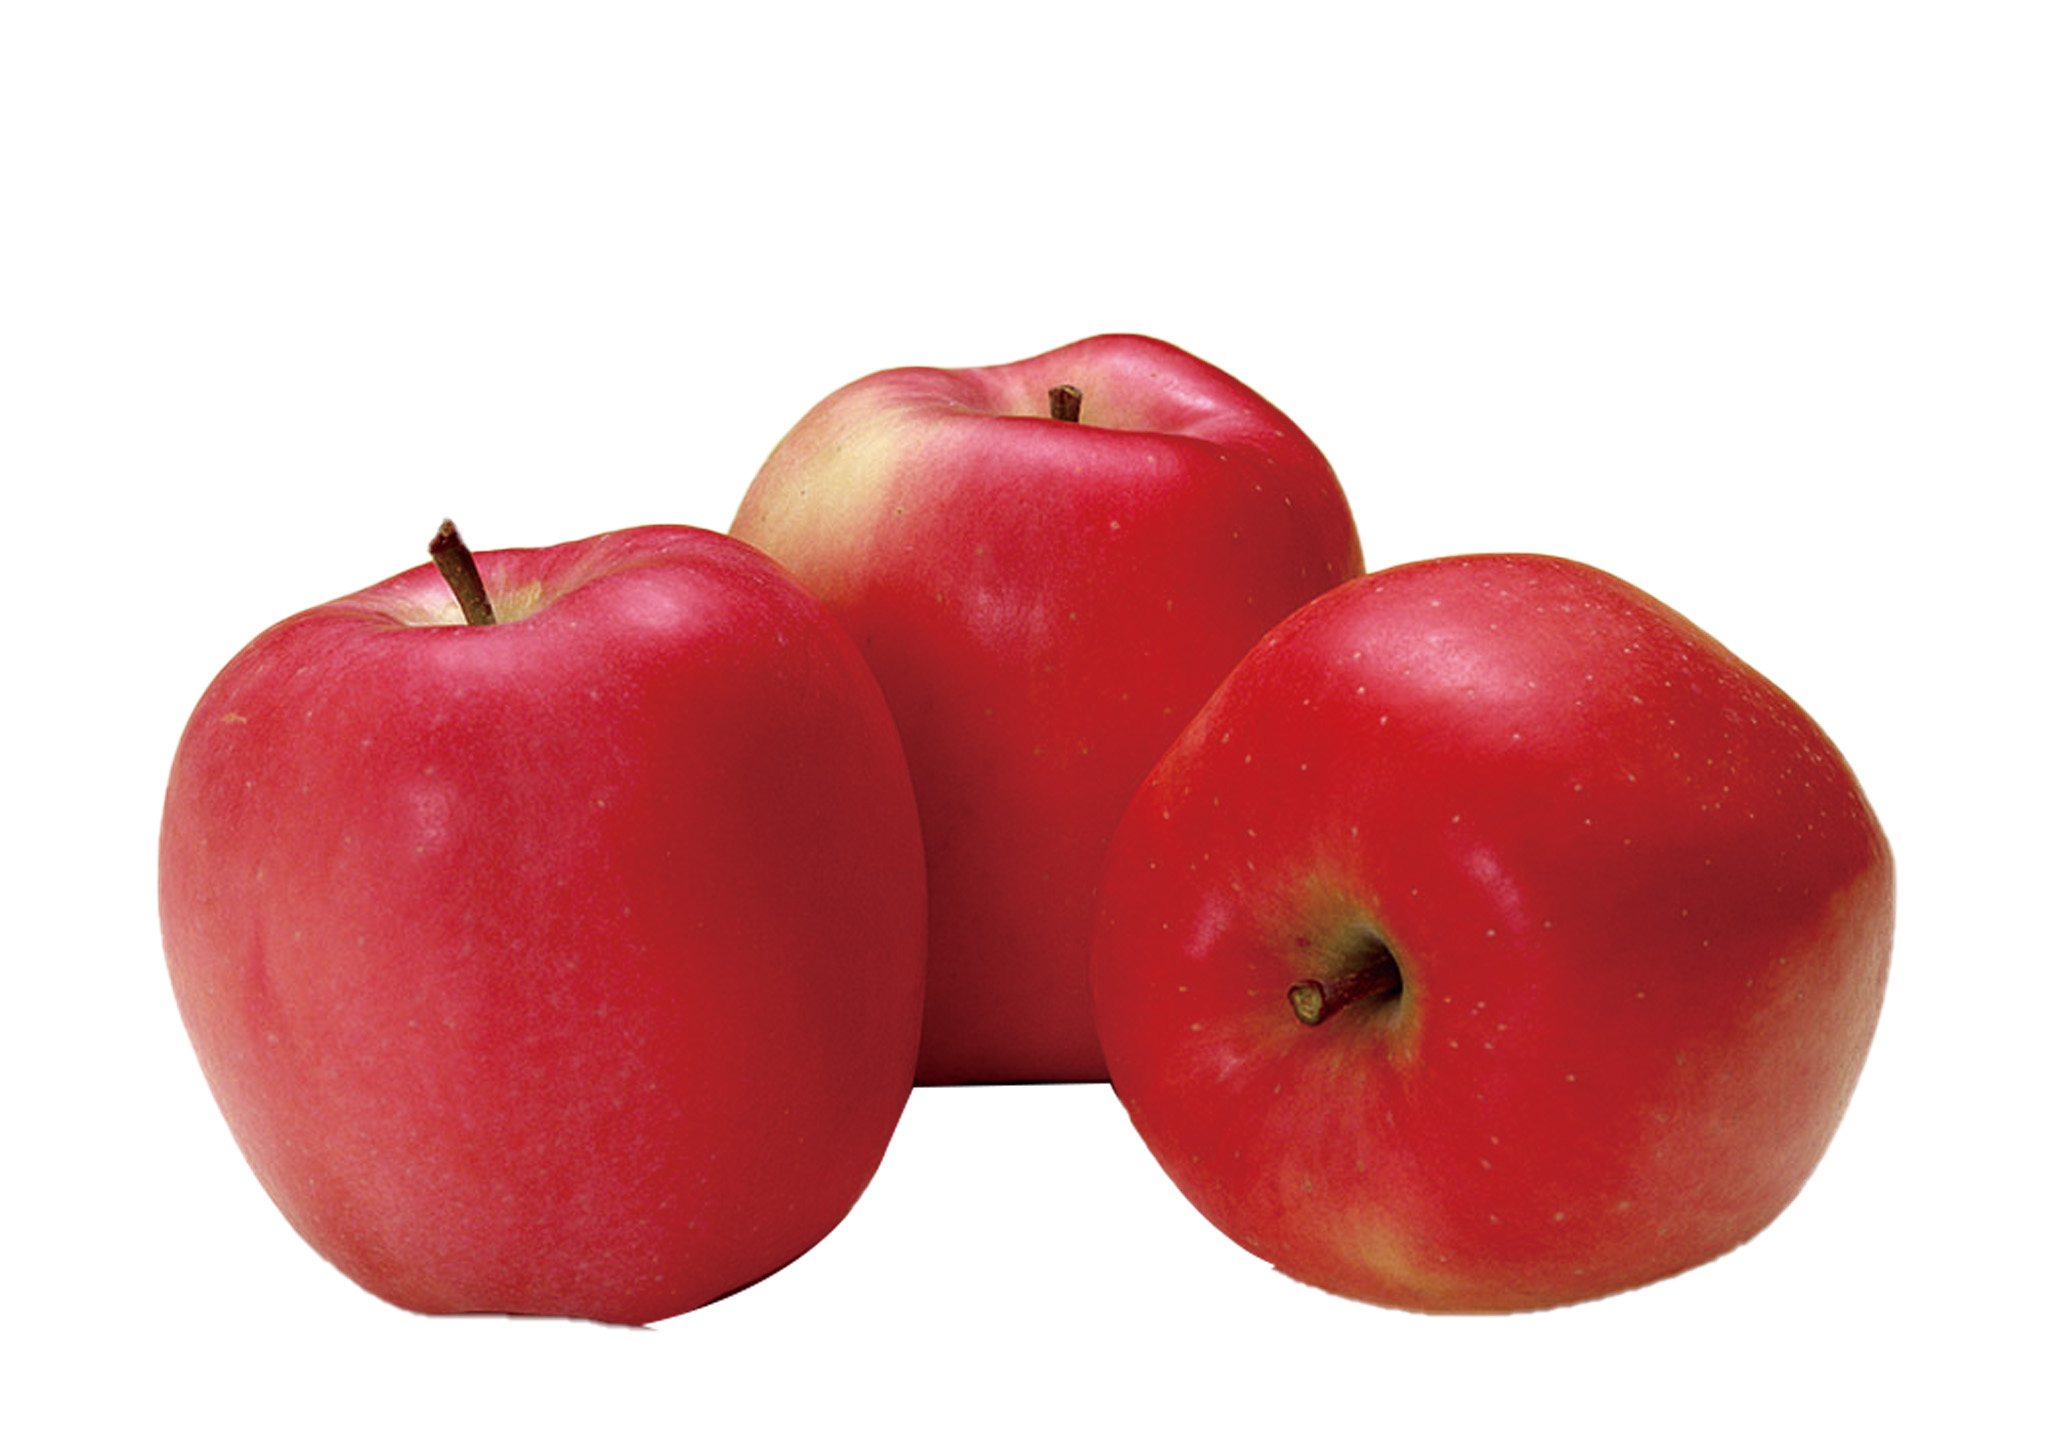 多吃蘋果等高纖食物。